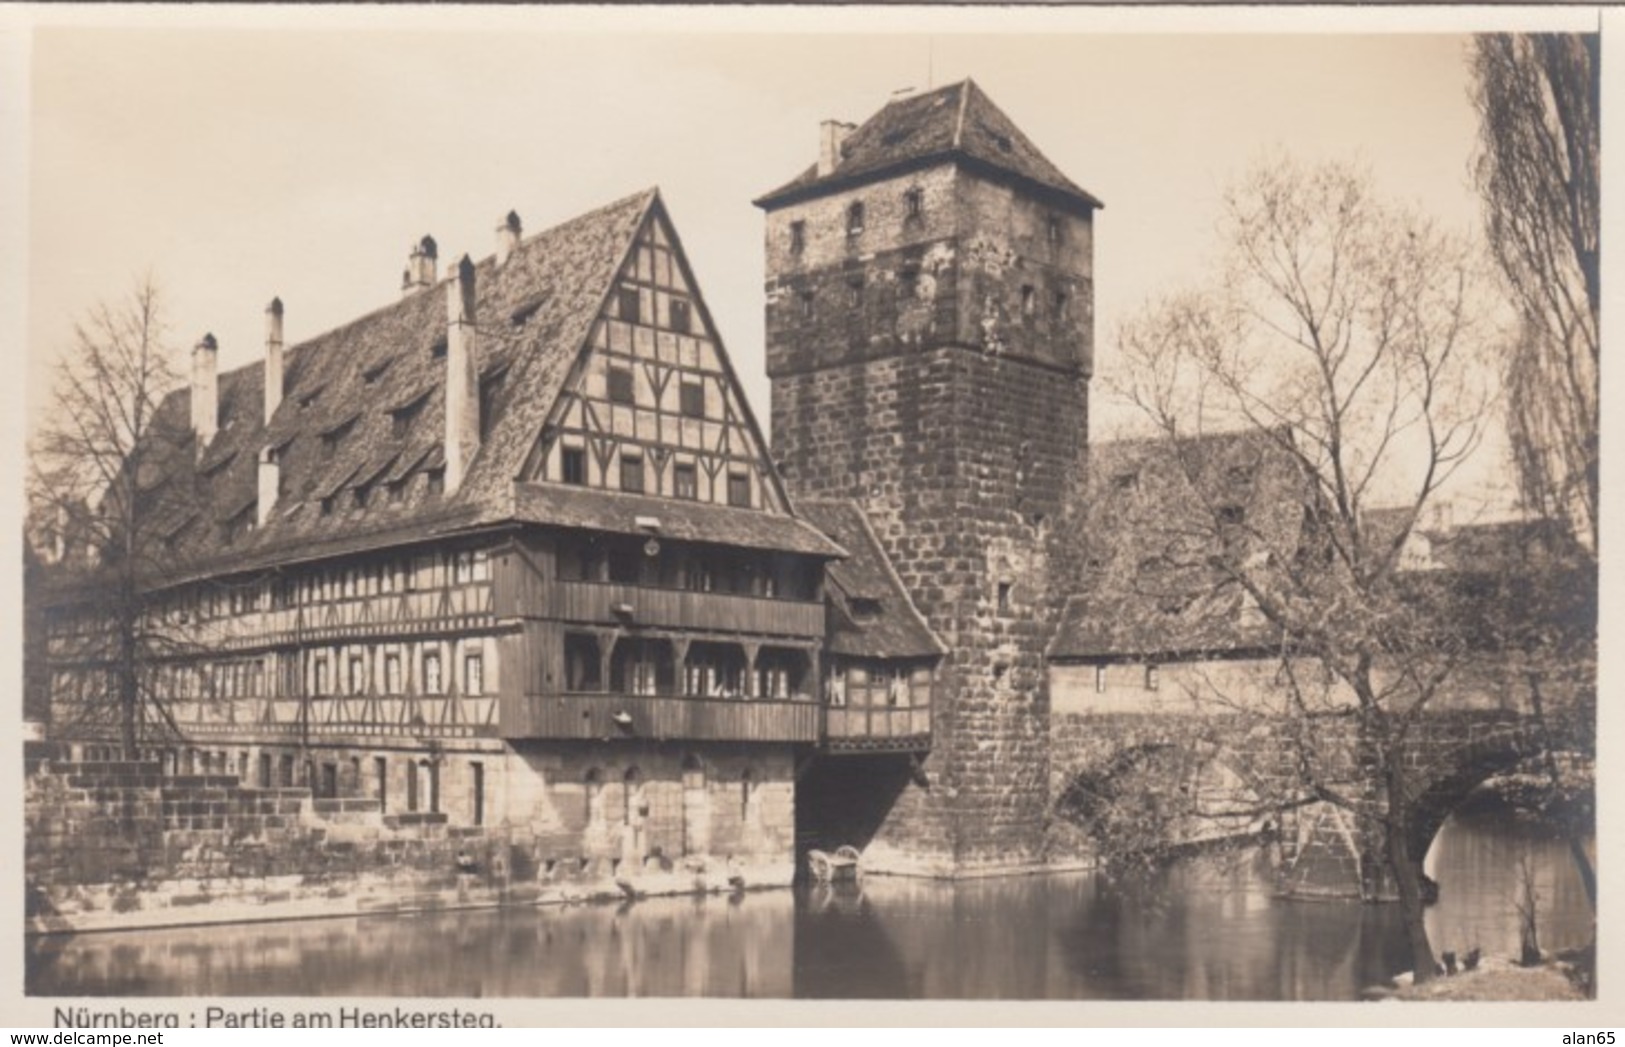 Nuernberg Germany, Henkersteg Hangman's Bridge, C1920s/30s Vintage Real Photo Postcard - Nuernberg